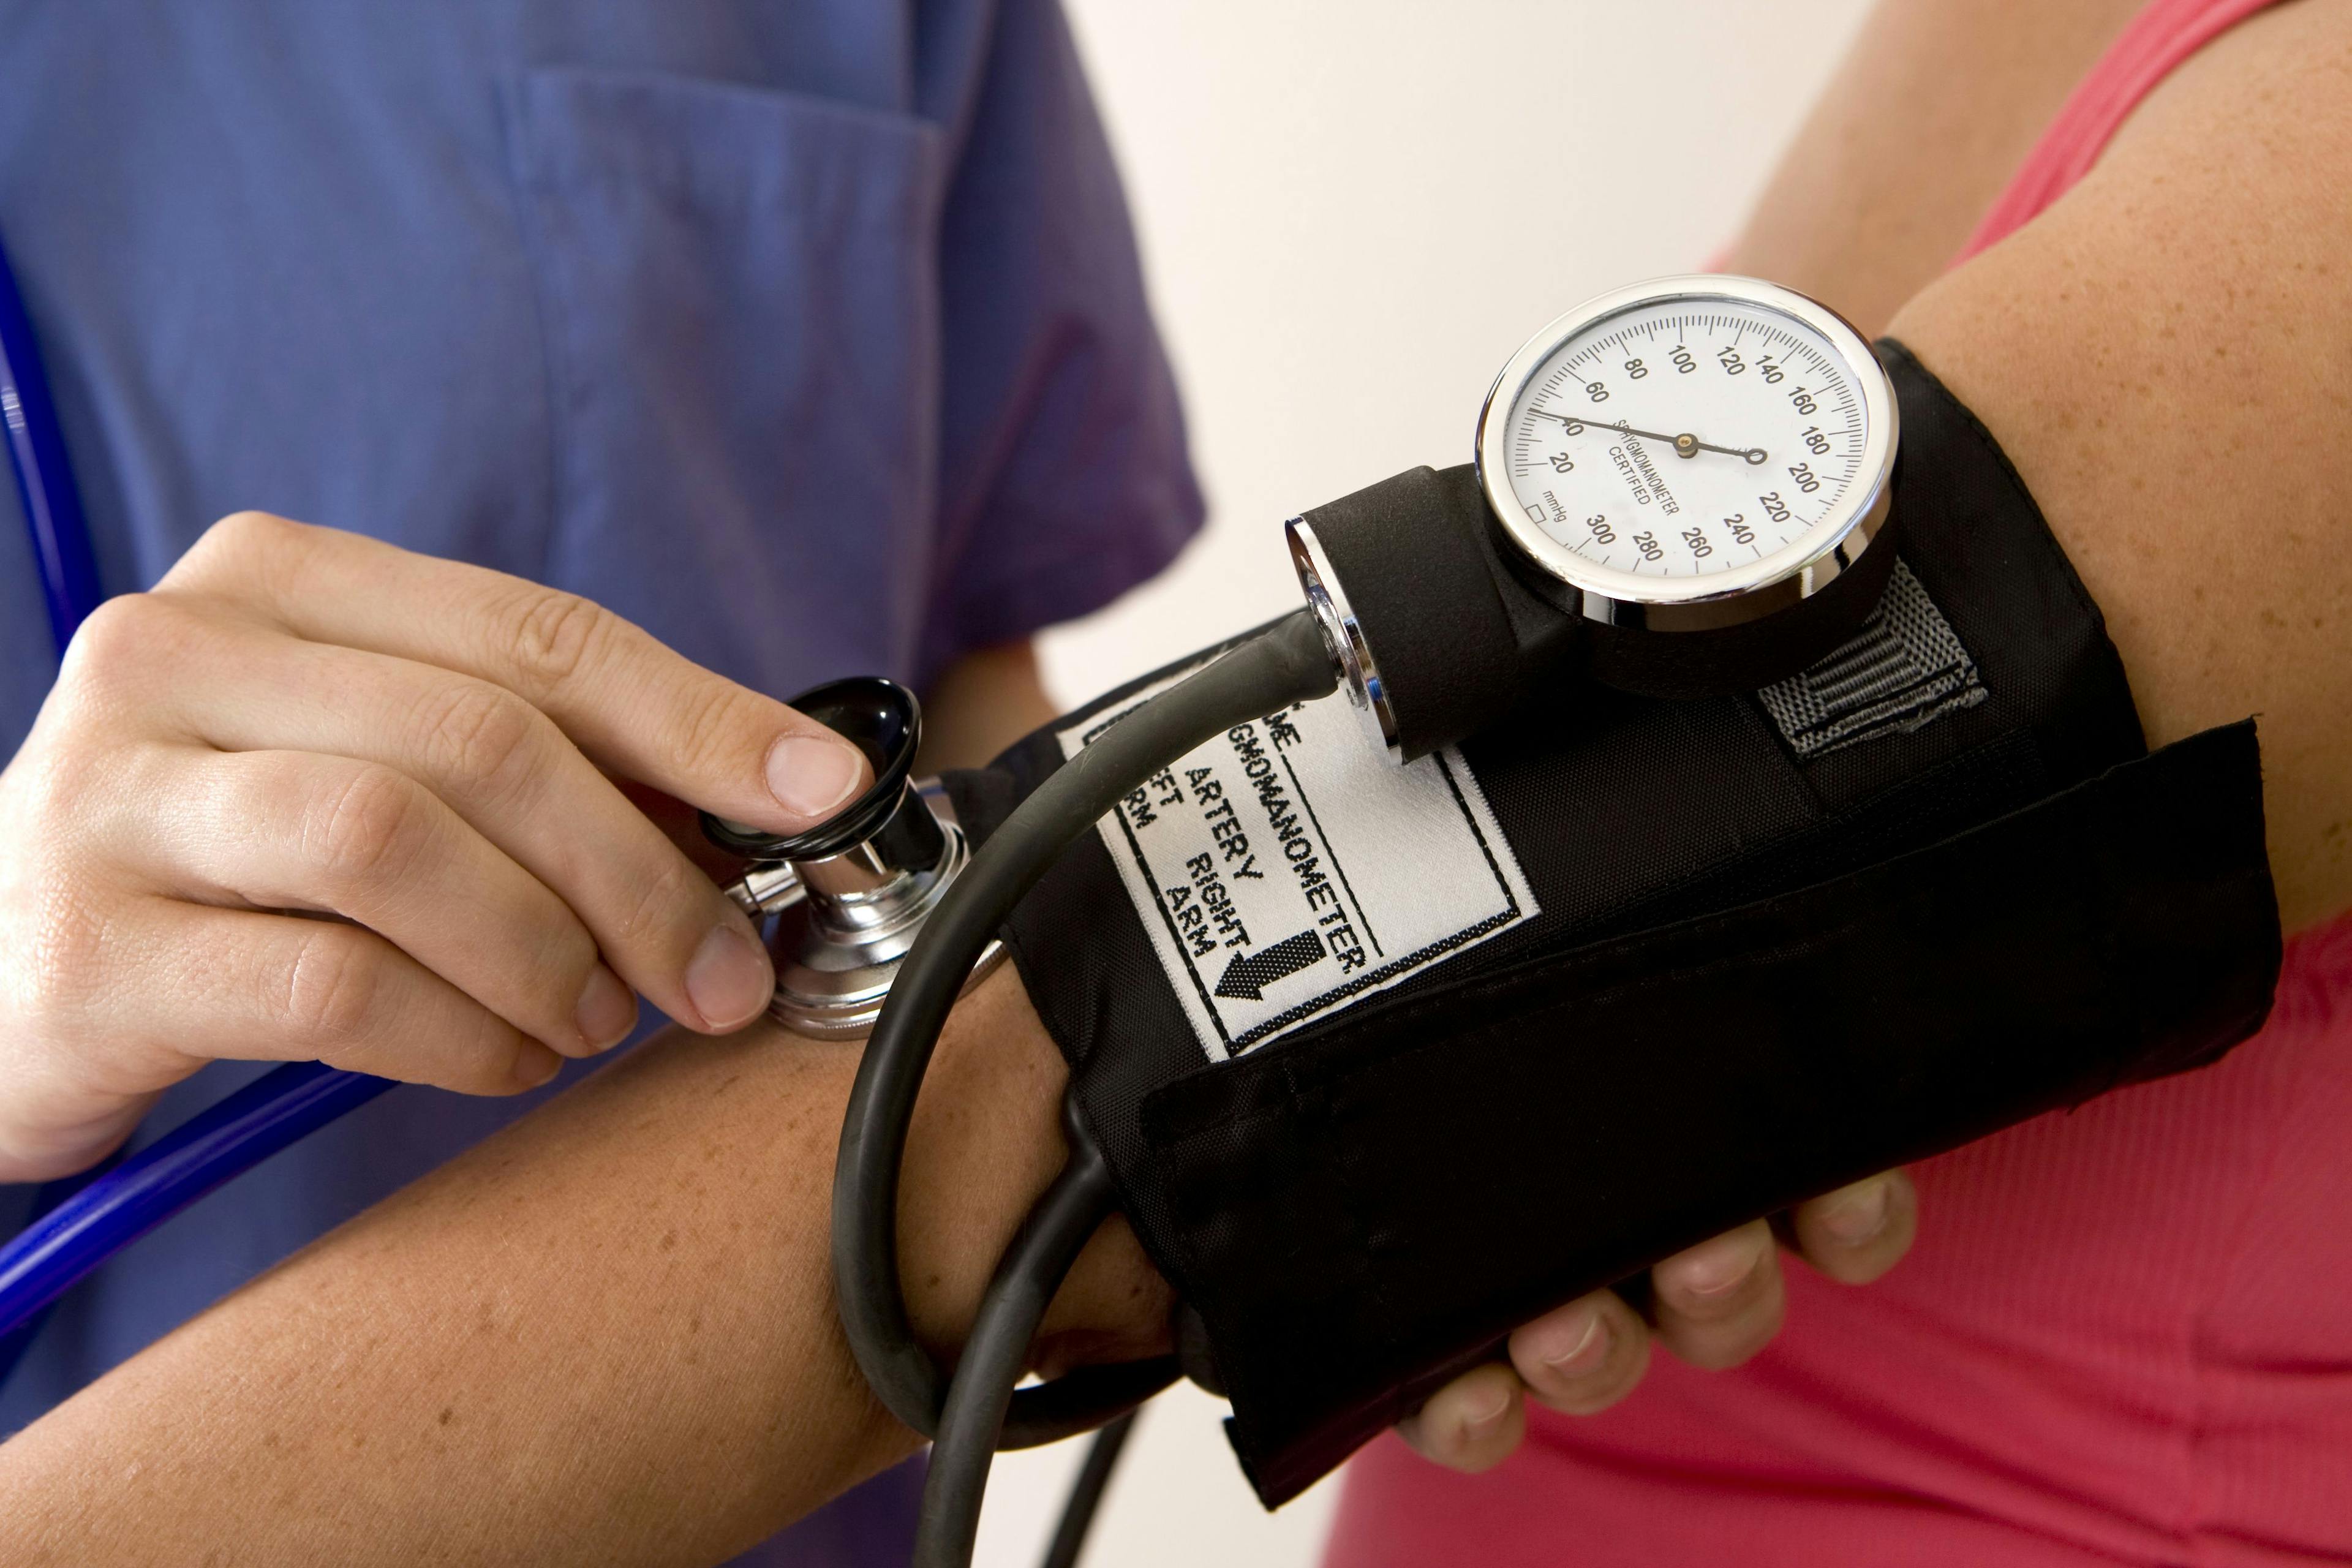 Close up of a blood pressure cuff